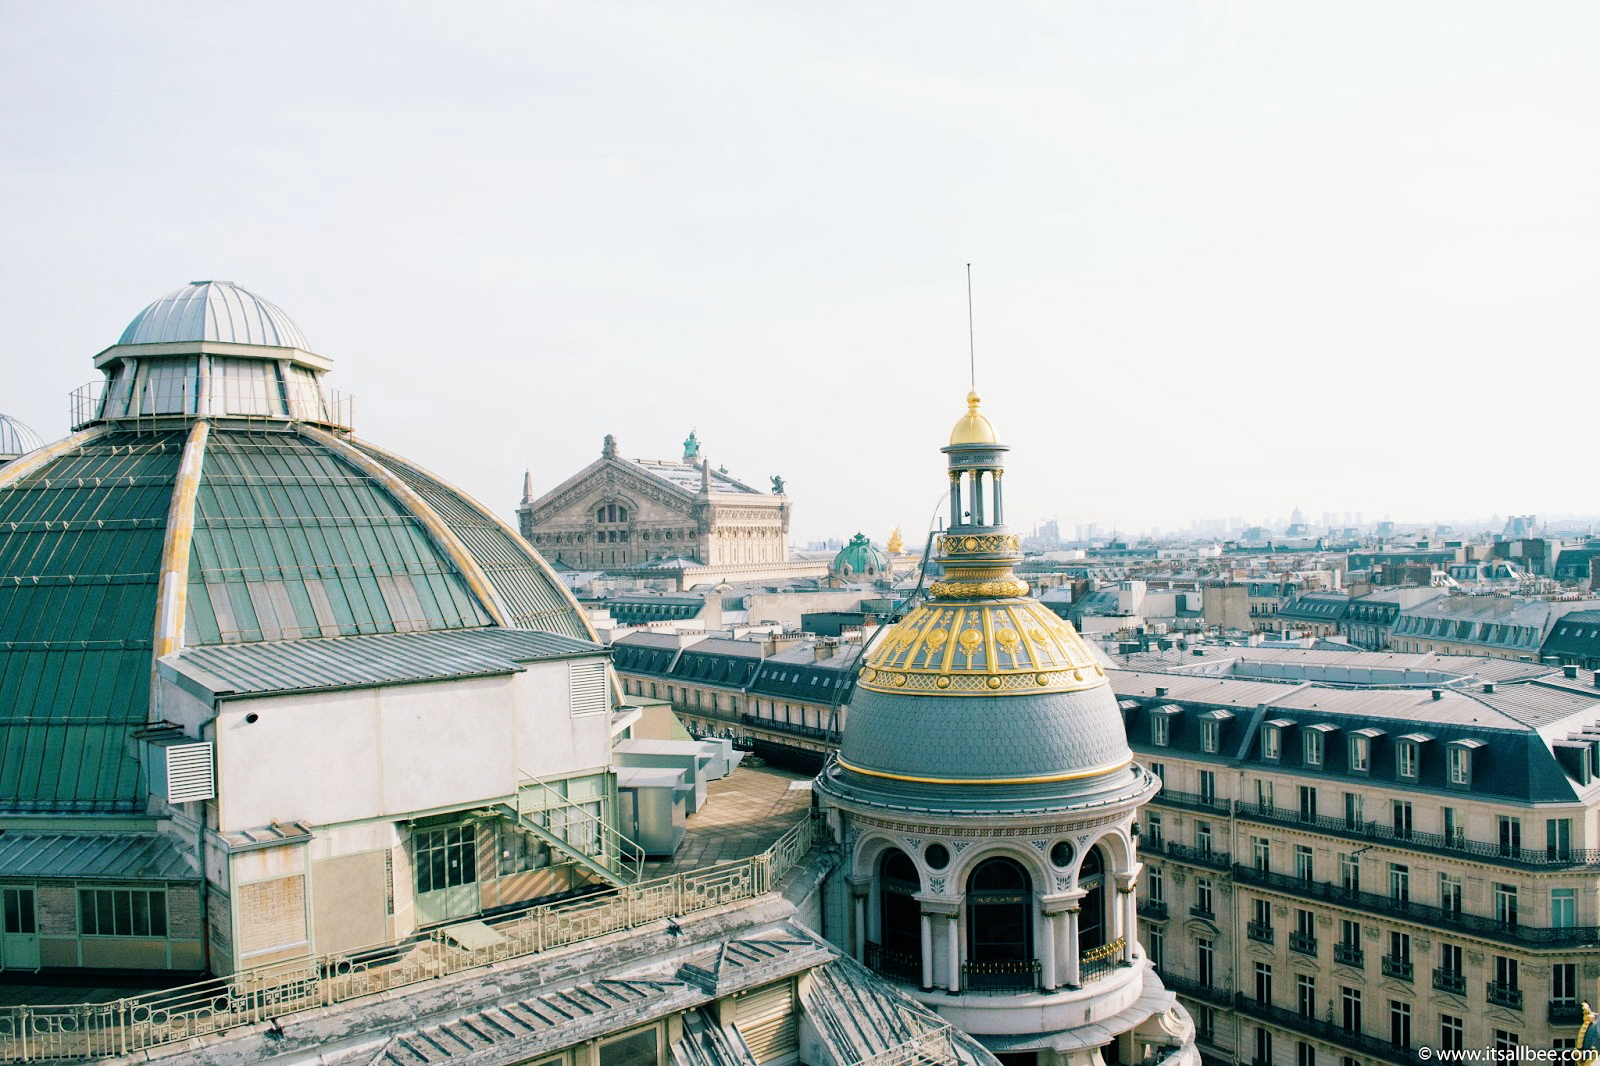  Printemps Rooftop Terrace Cafe | Best Kept Secret In Paris